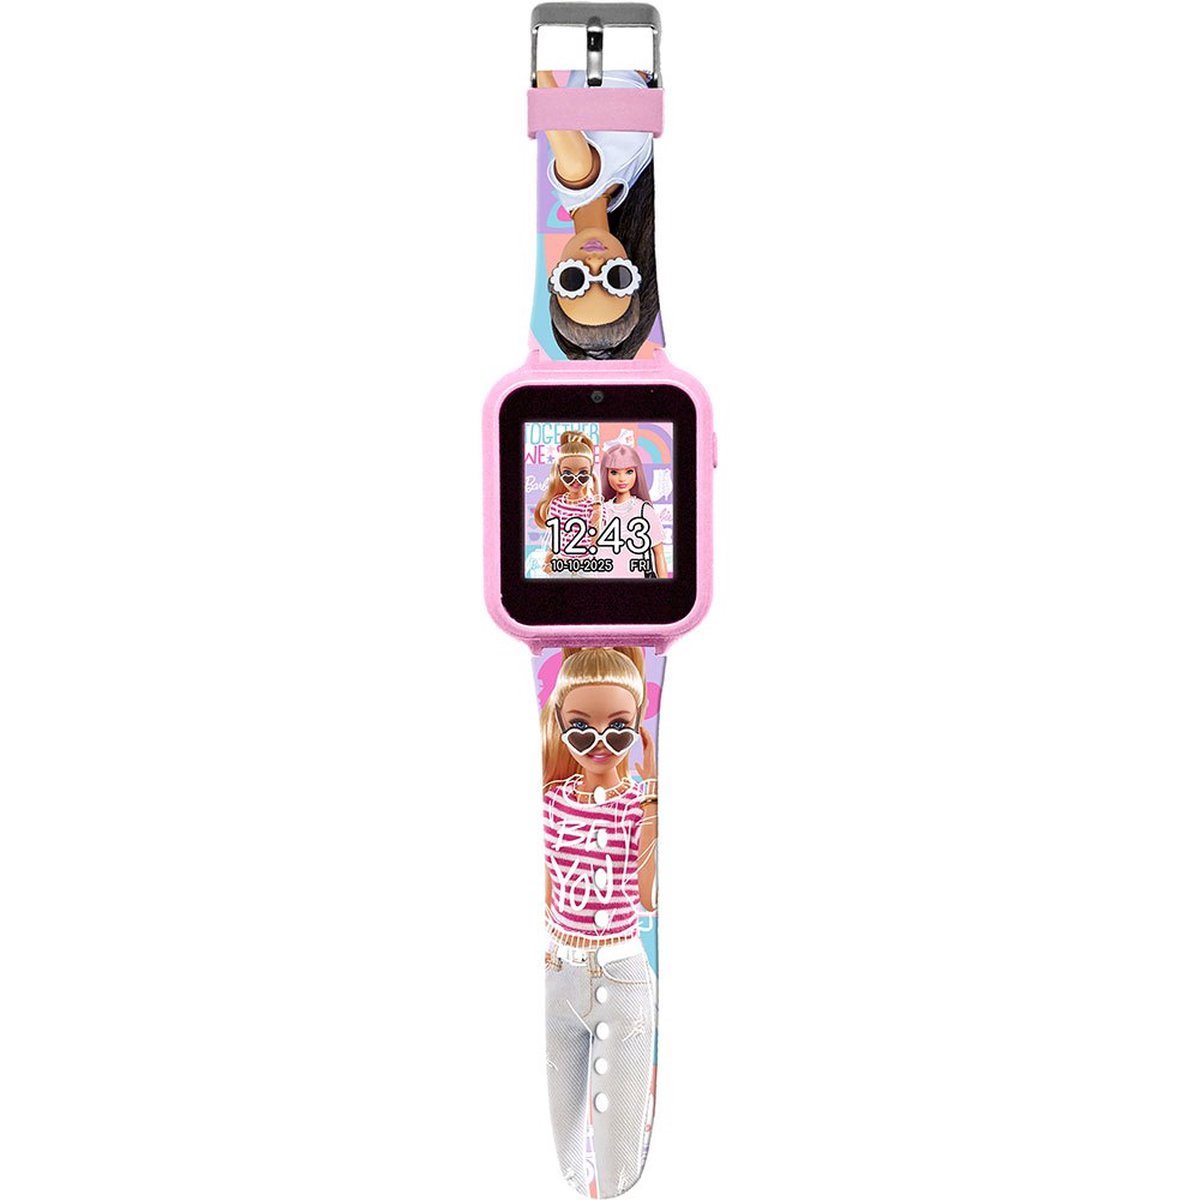 Barbie Interactief Horloge Roze